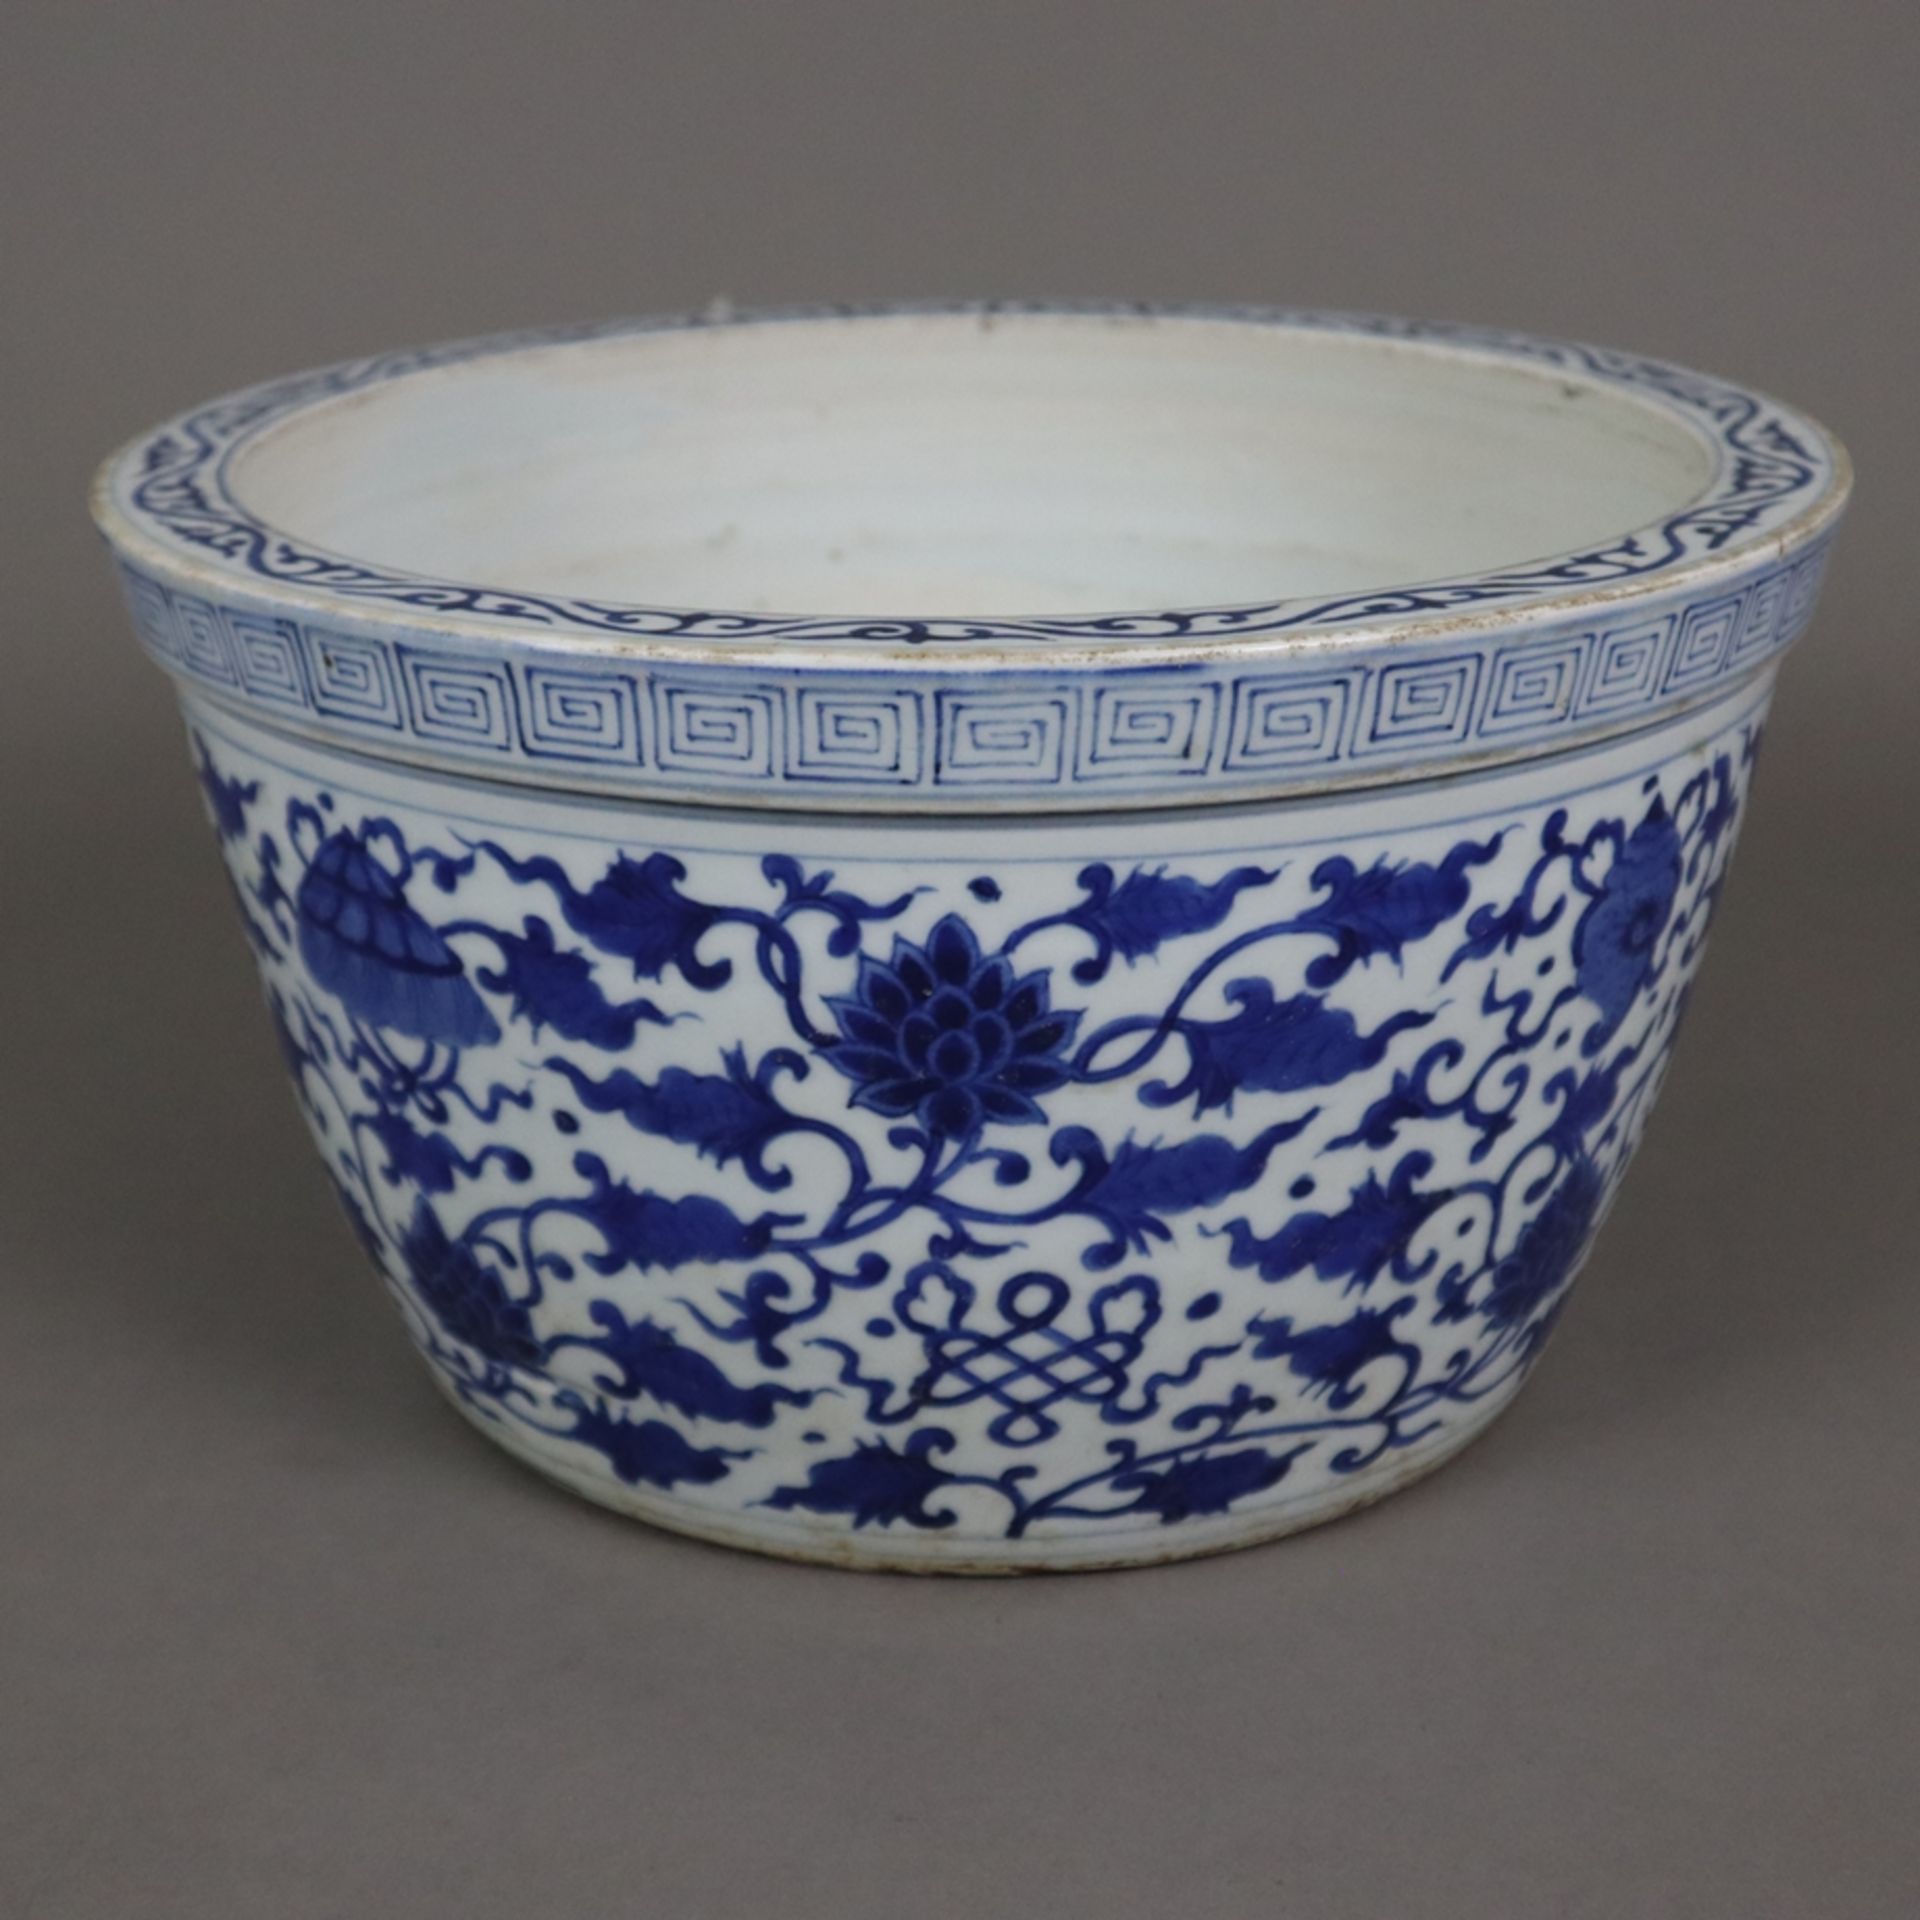 Blau-weißer Cachepot - China, zylindrische, leichte ausgestellte Wandung mit blauem Unterglasurdeko